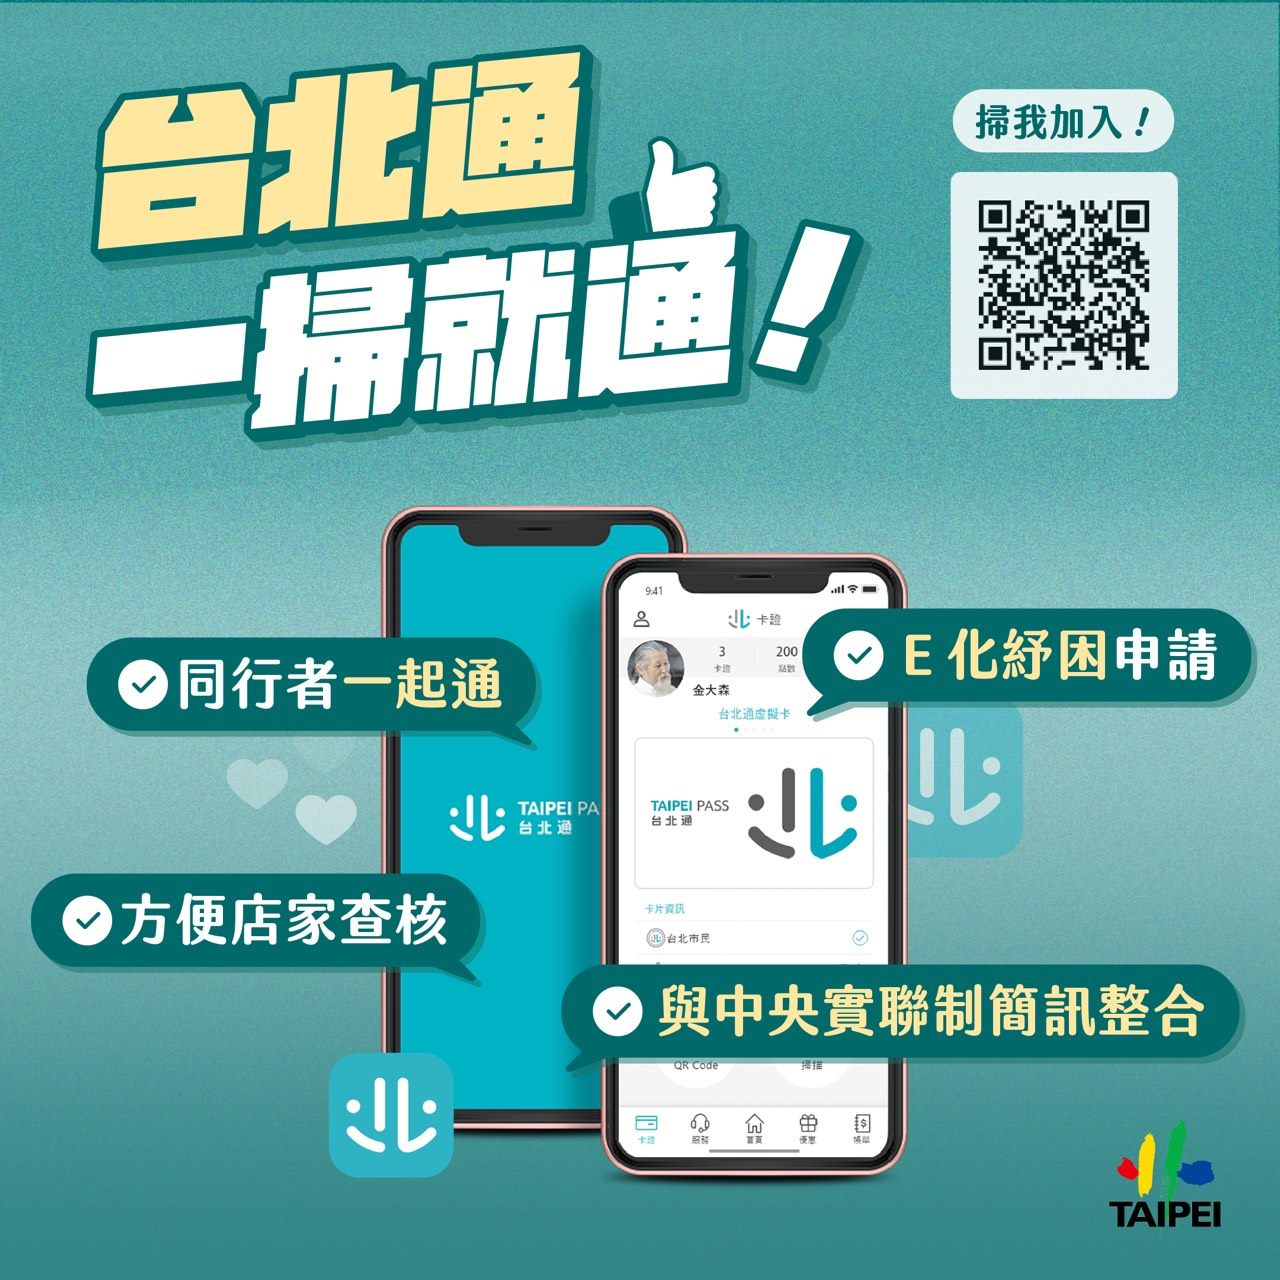 Poster promoting TaipeiPASS